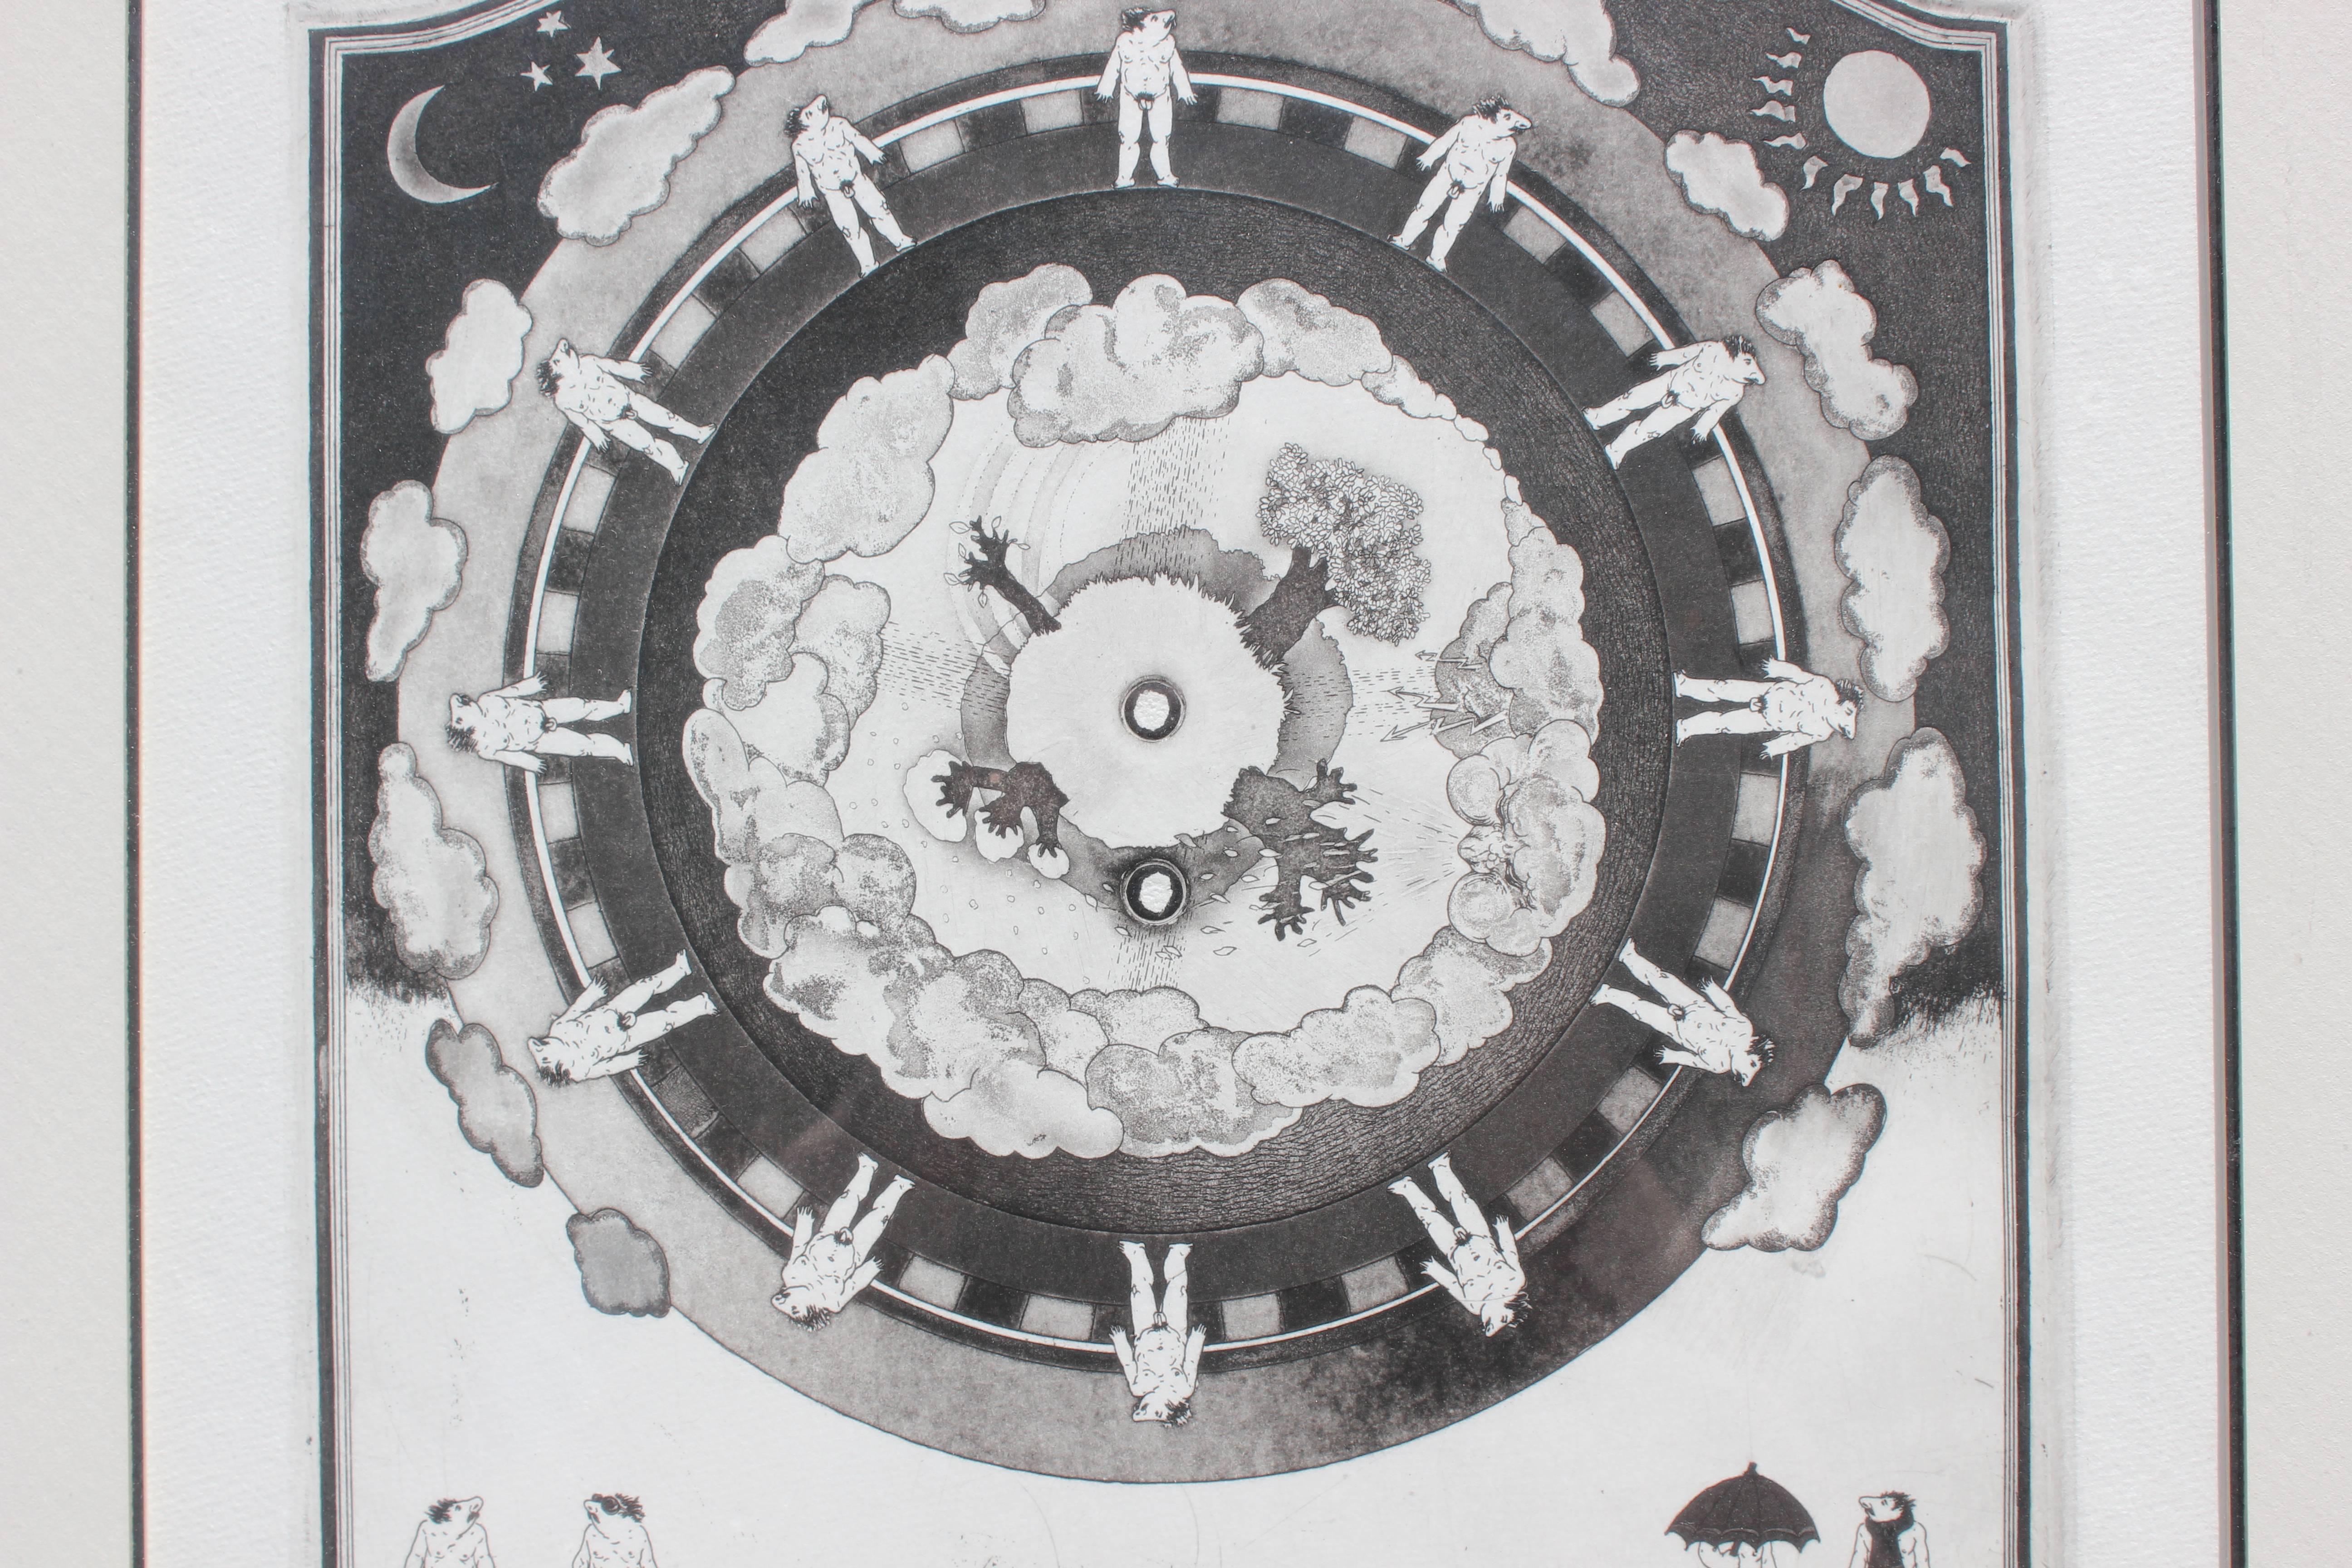 Schwarz-Weiß-Lithografie mit surrealistischen Männern, die in einem Rad angeordnet sind und die verschiedenen Jahreszeiten eines Jahres darstellen. Der Winter wird durch kahle Bäume und Schals dargestellt. Der Herbst wird durch Regenfälle und